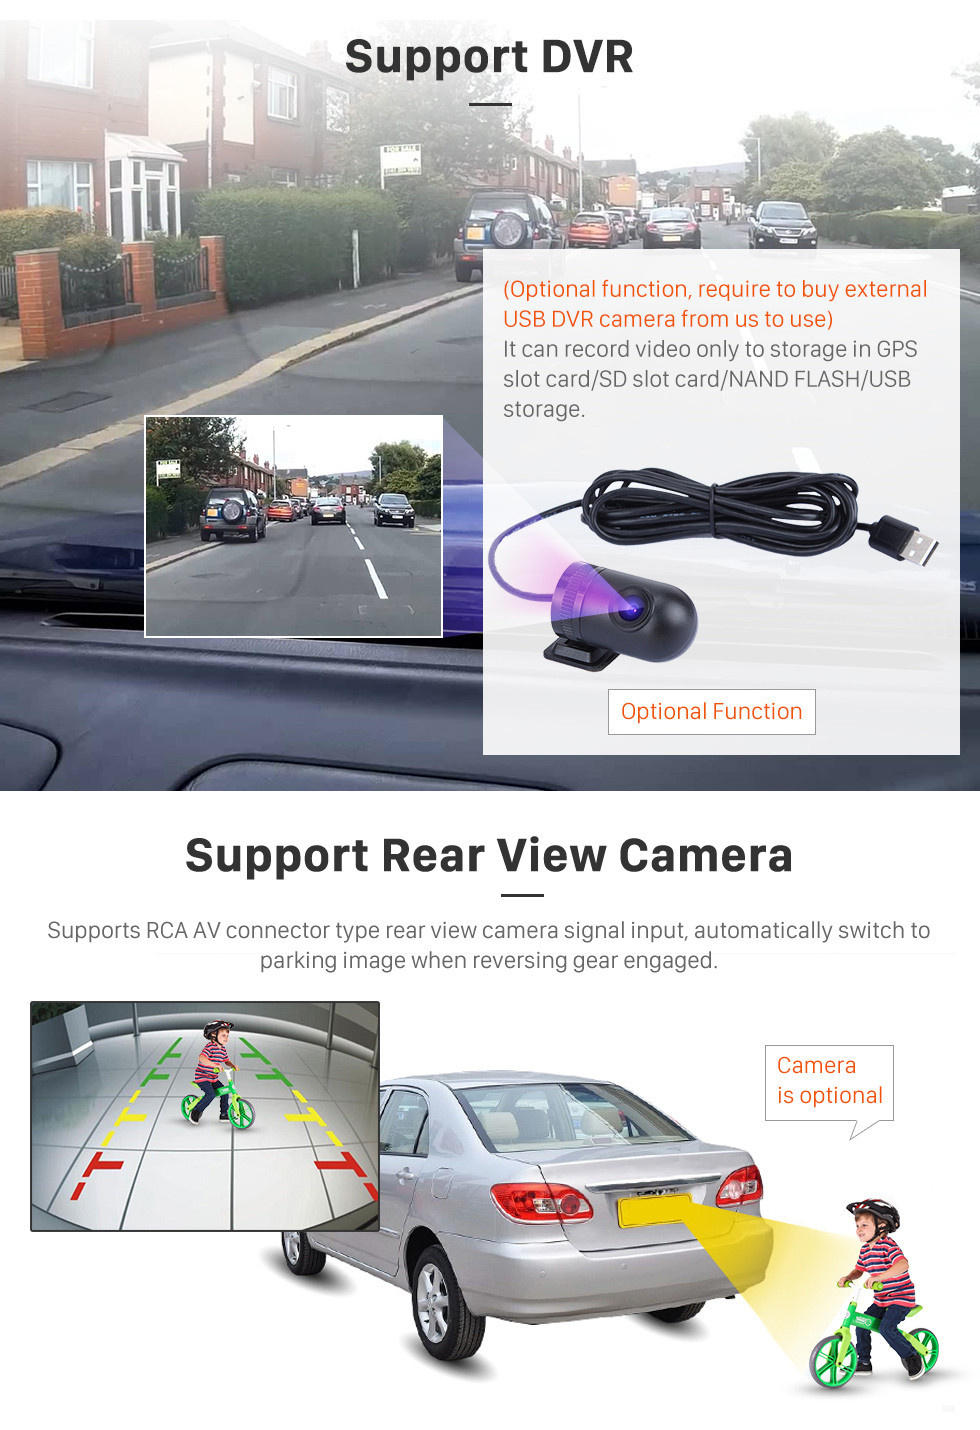 Seicane 10.1 polegada Android 11.0 Rádio para 2016-2018 Volkswagen Passat Bluetooth HD Touchscreen Navegação GPS Carplay apoio USB OBD2 câmera de Backup